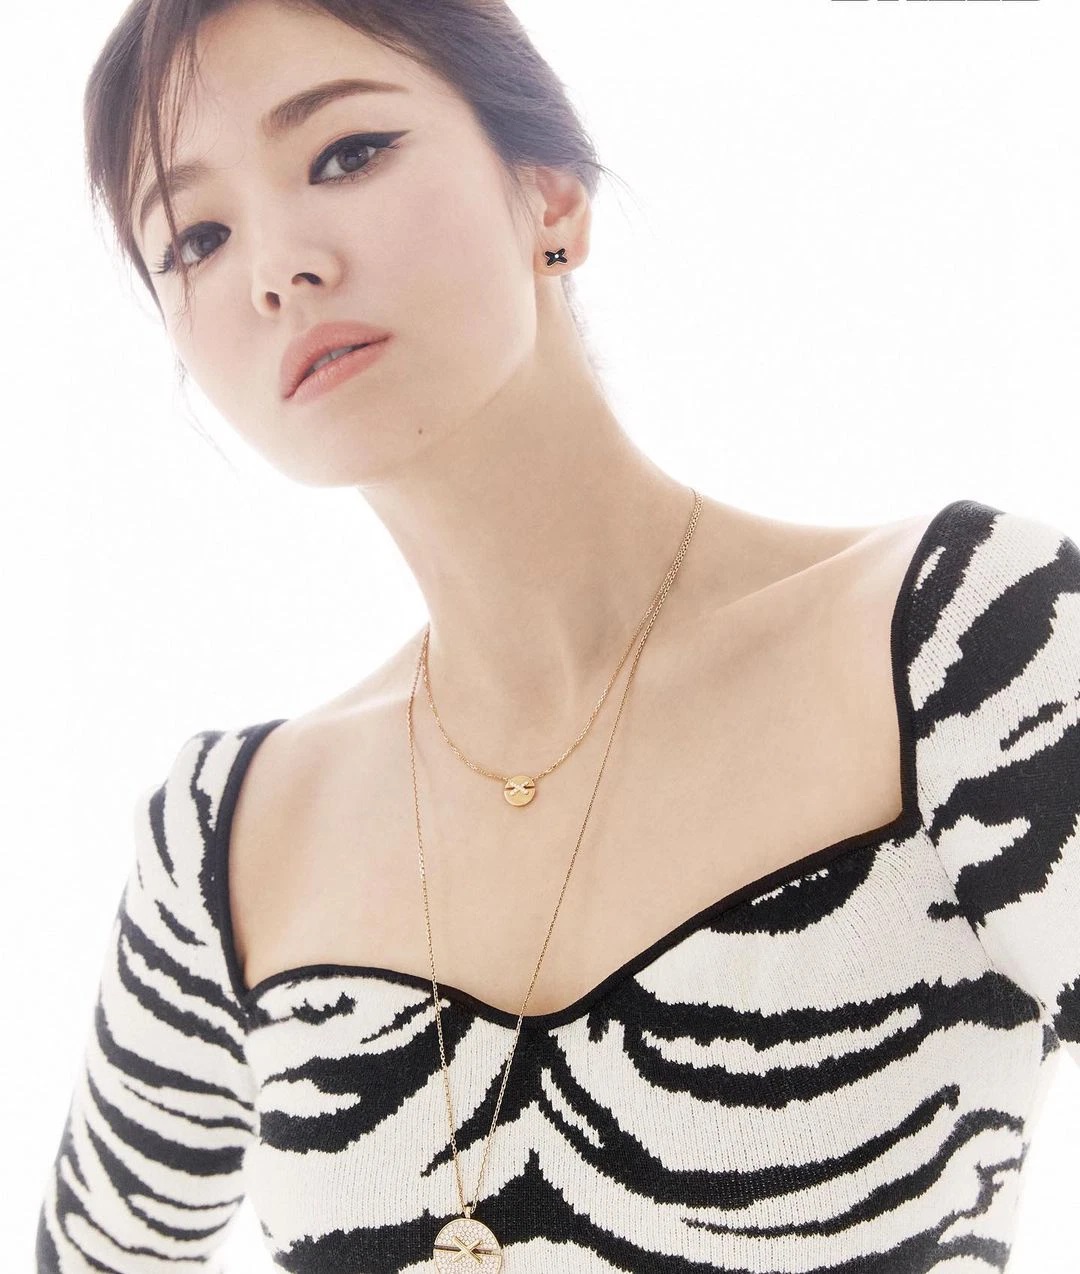 Song Hye Kyo hiếm khi mặc đồ hở nhưng hễ mặc là ai cũng phải bất ngờ với điểm tuyệt phẩm này - Ảnh 10.